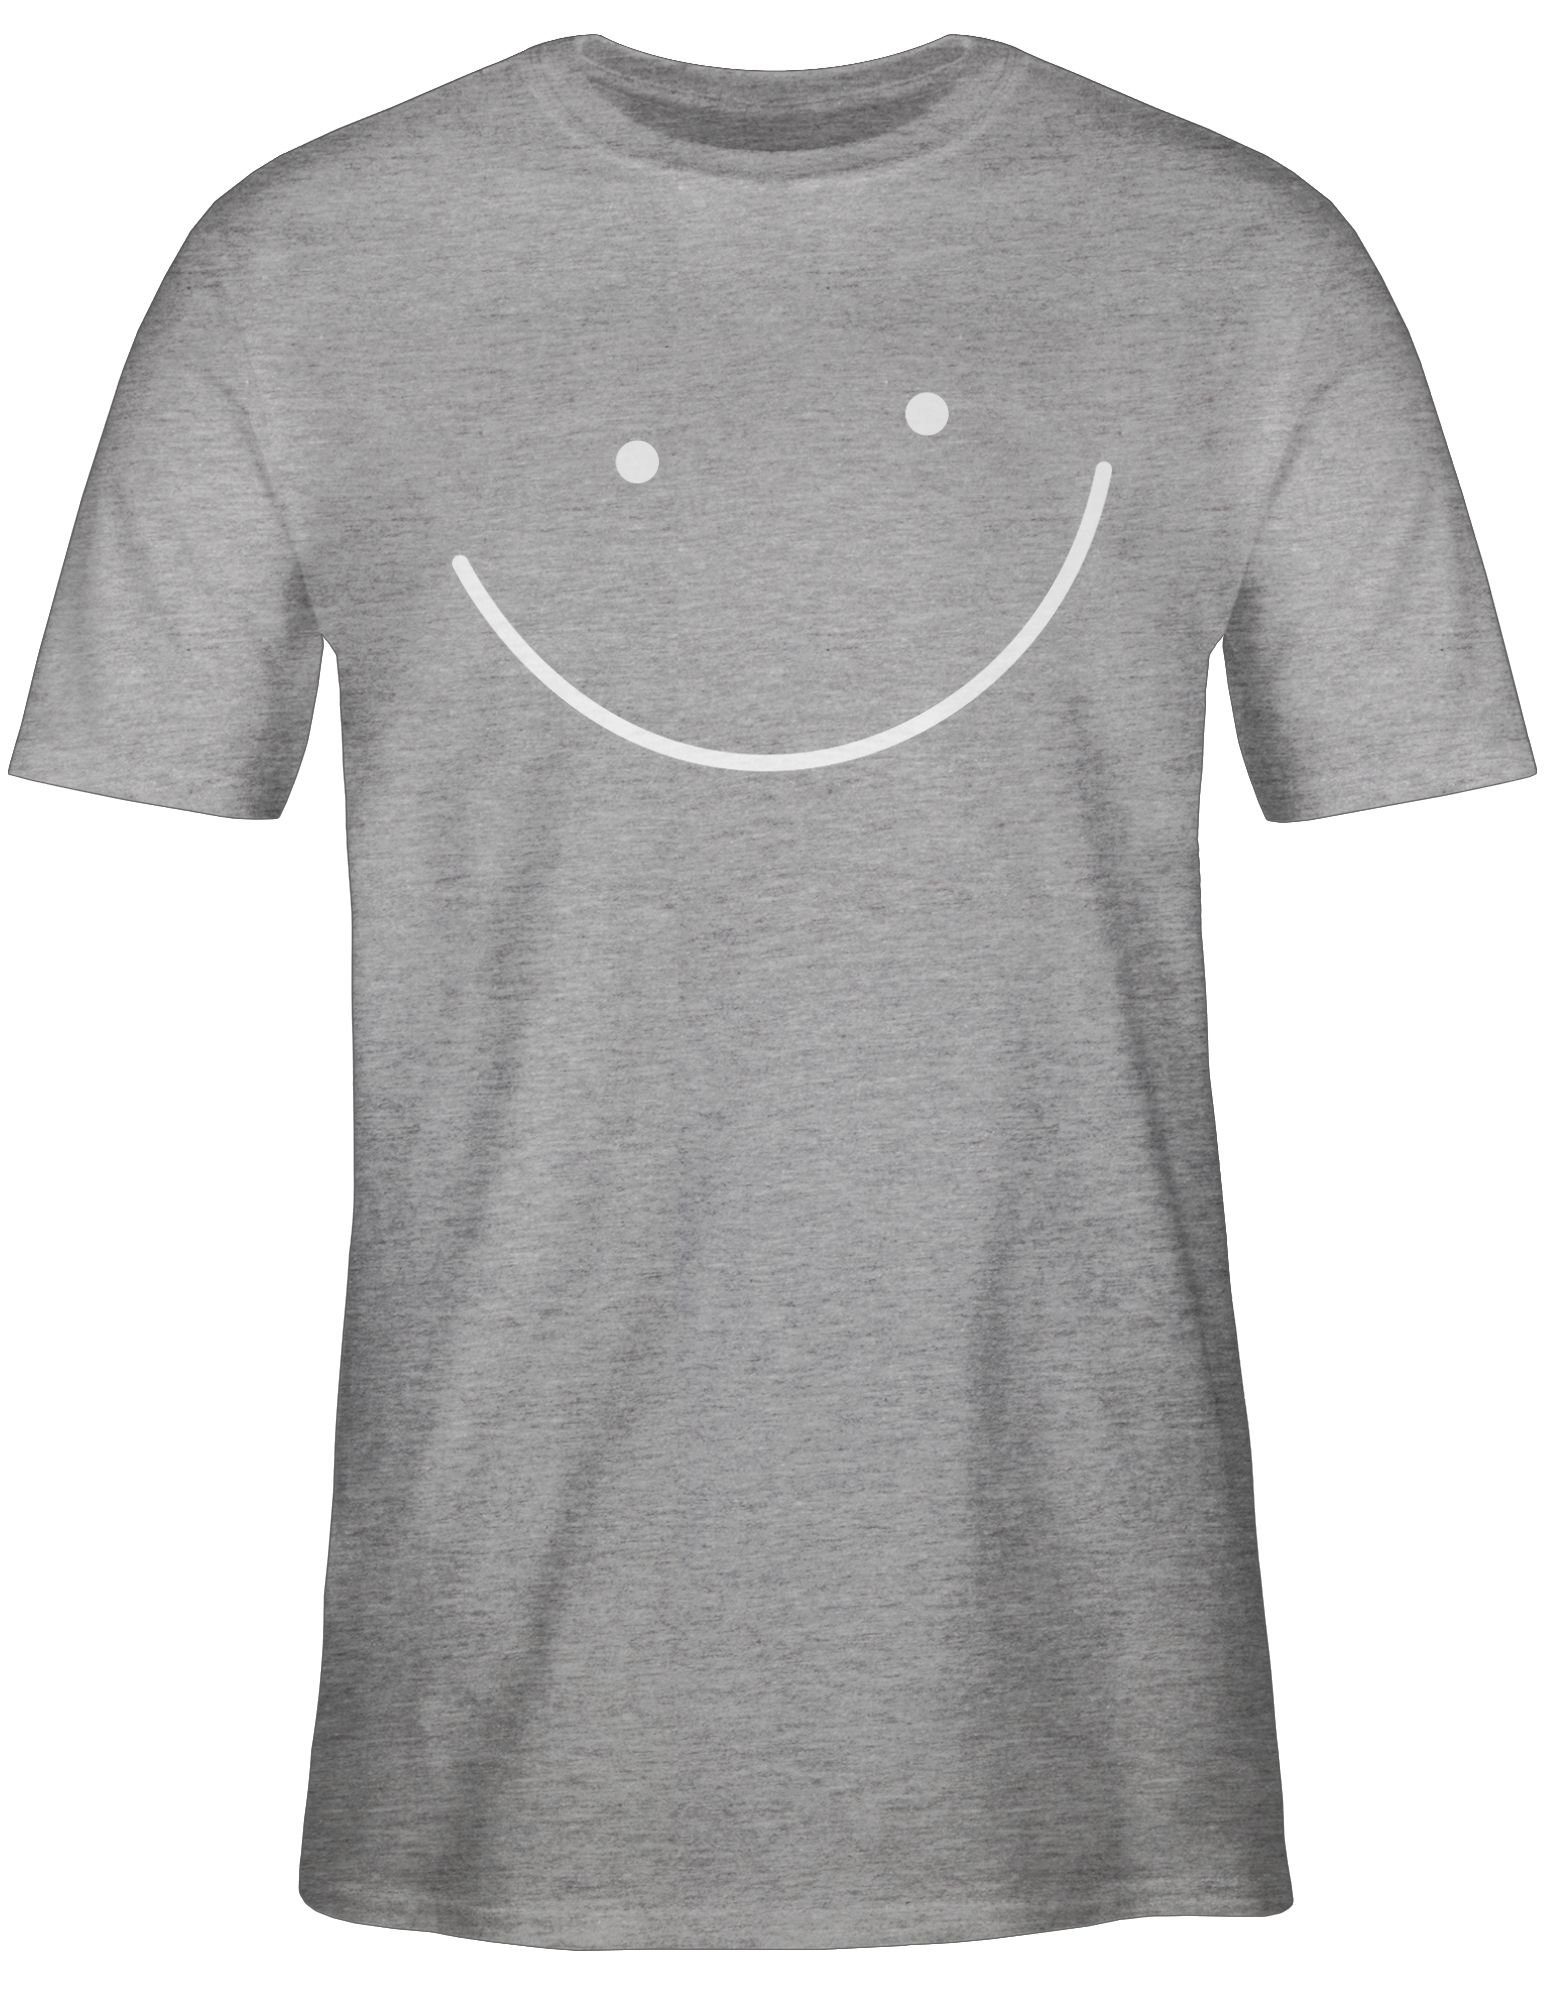 Shirtracer T-Shirt Smile Gesicht meliert Grau Sprüche Statement 03